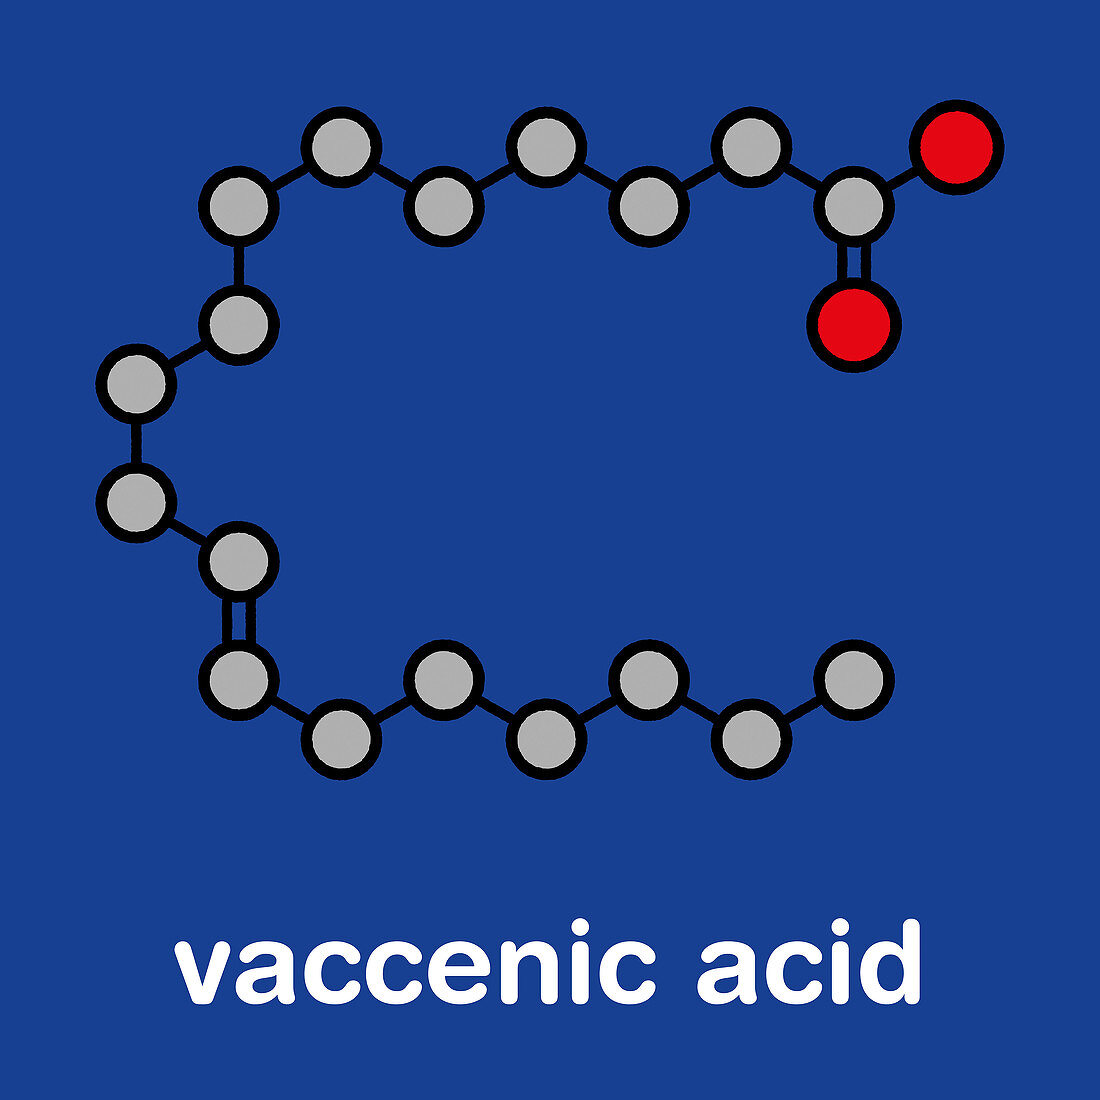 Vaccenic acid molecule